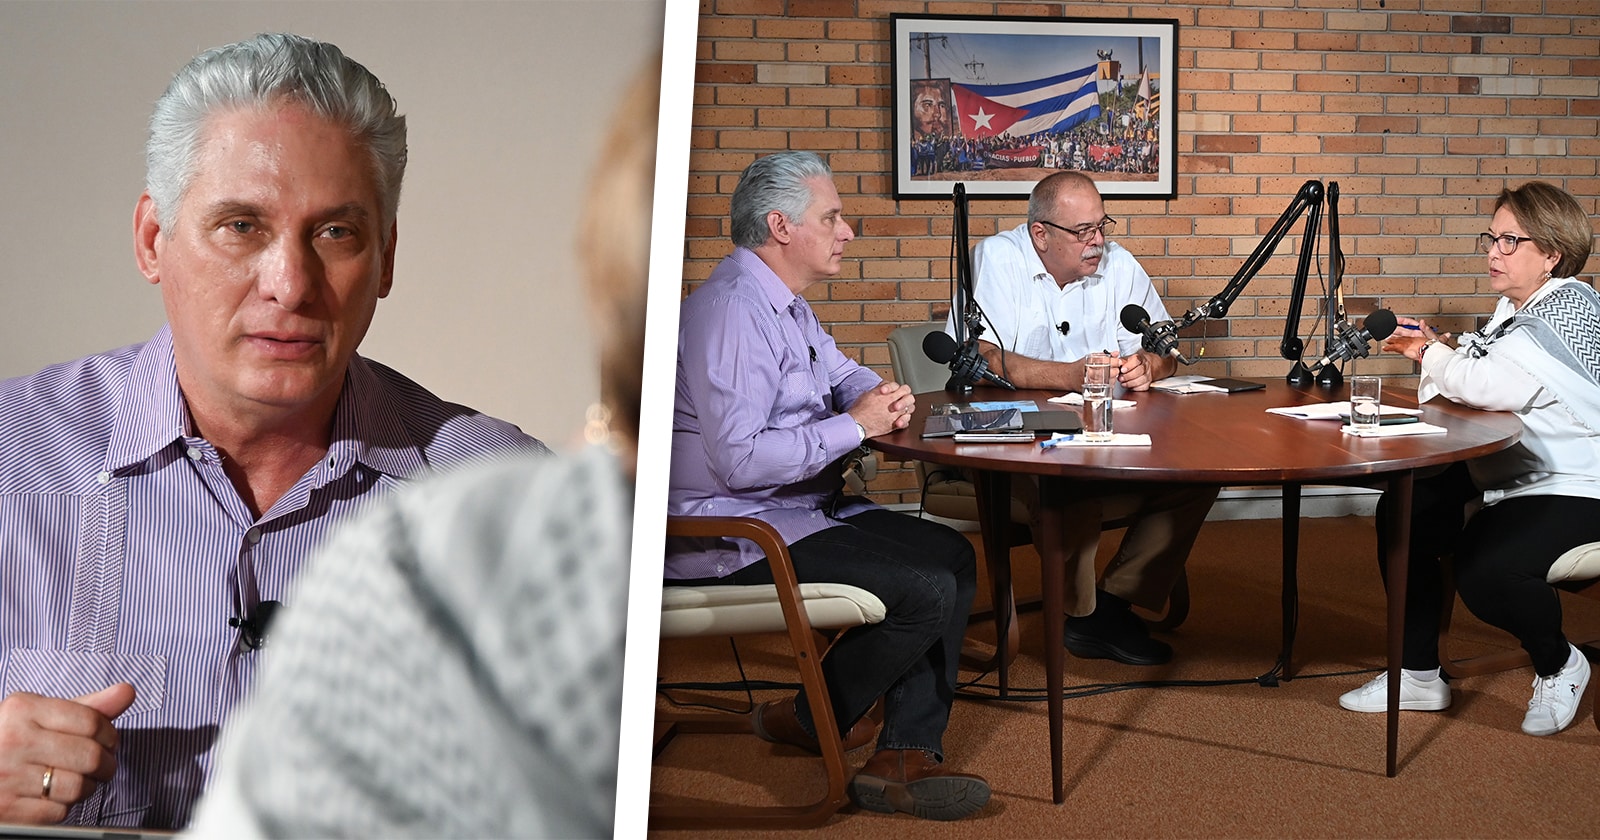 Díaz Canel al Habla: Cuba Estrena Nuevo Espacio de Comunicación con el Pueblo